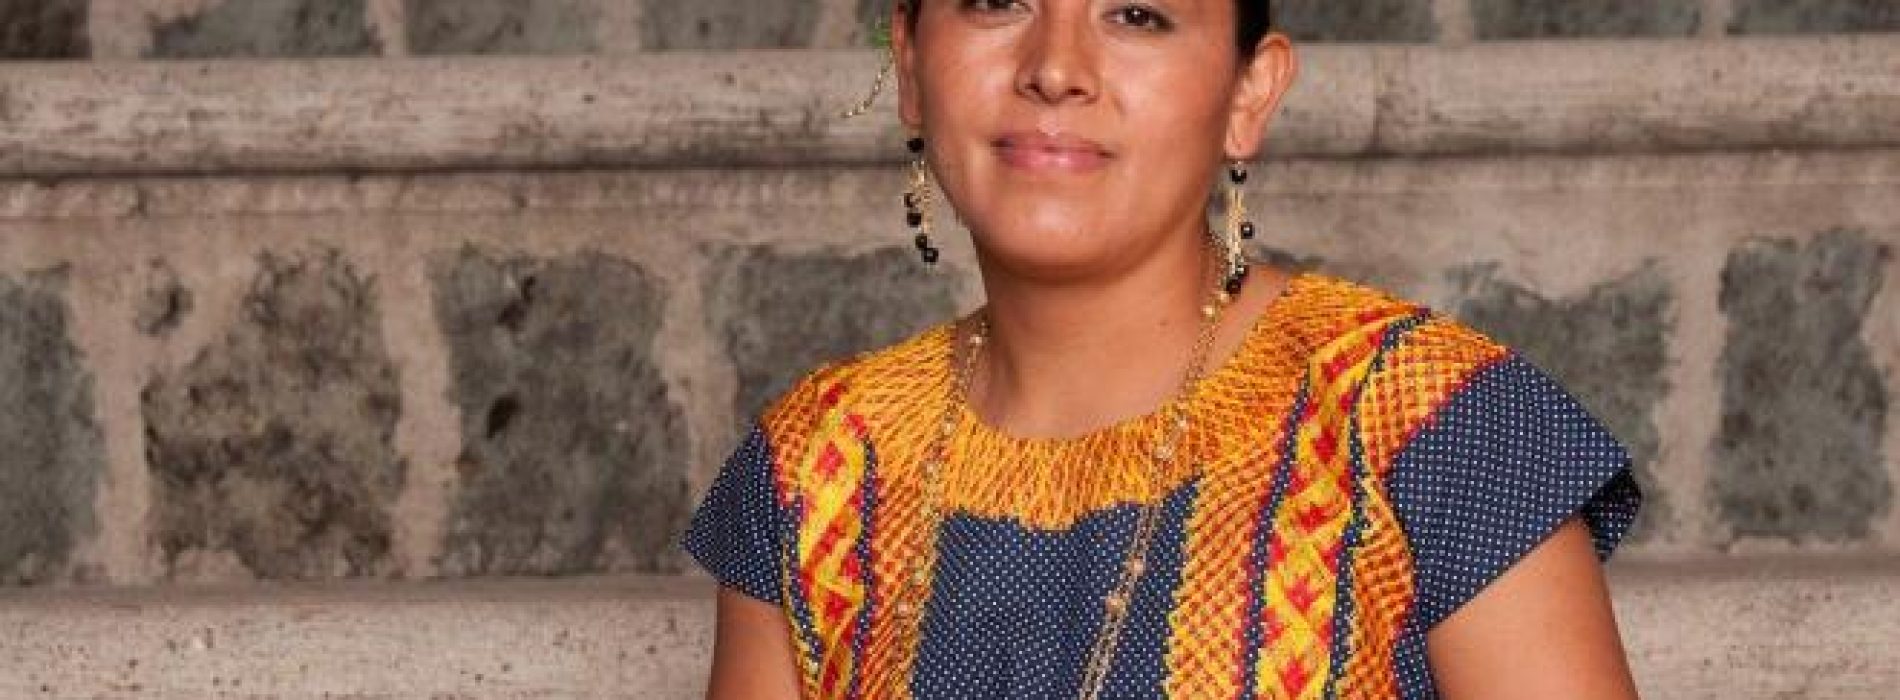 Revista Vogue reconoce a cocinera de Oaxaca